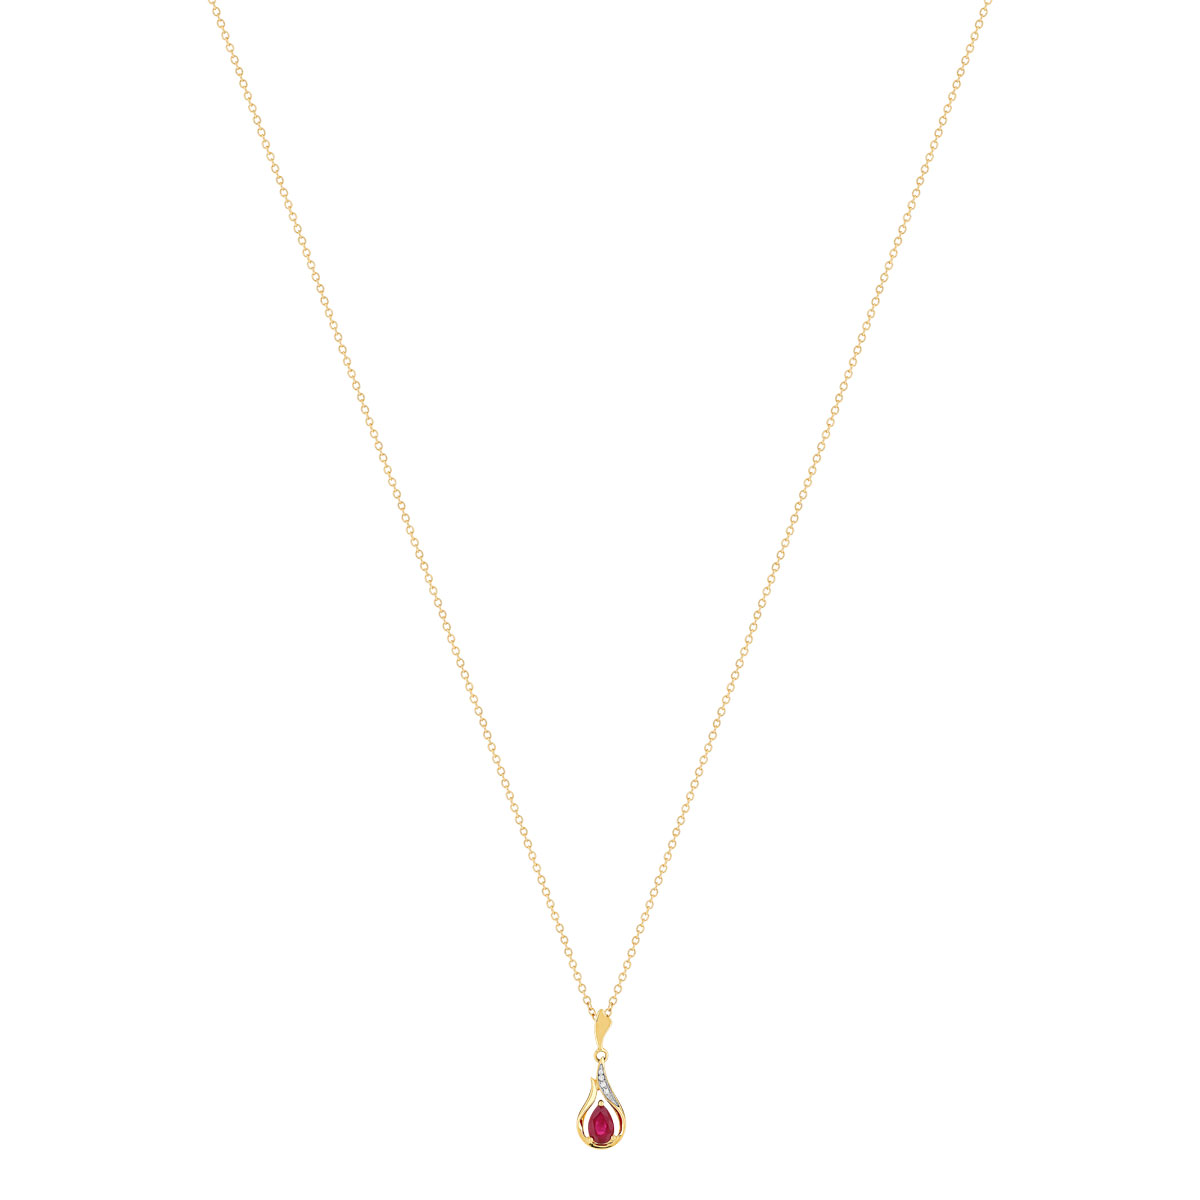 Collier or 375 2 tons rubis taille poire et diamants 45 cm